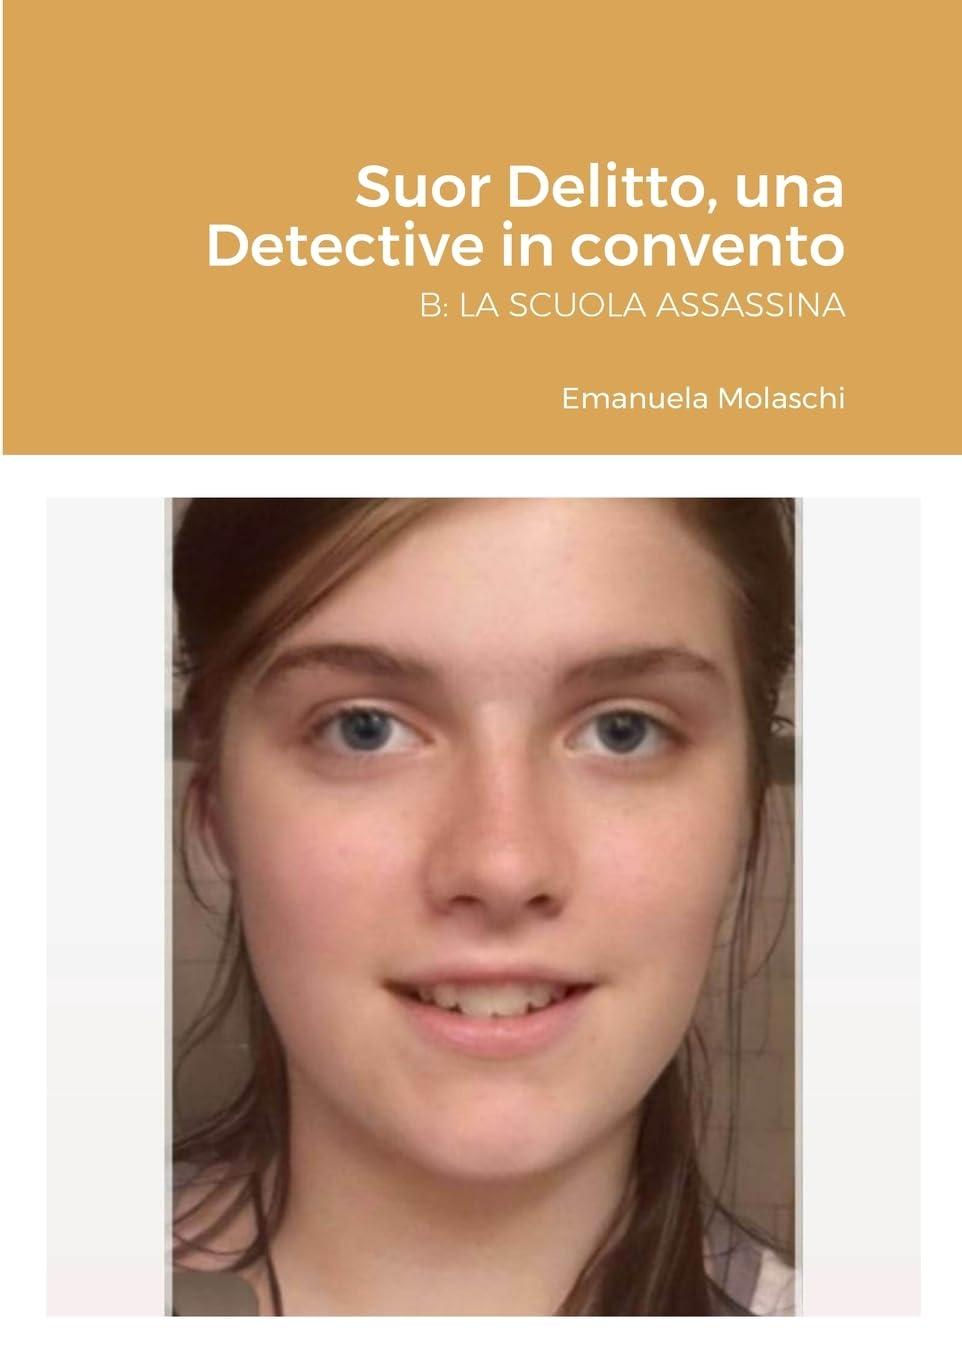 Libro "Suor Delitto, una Detective in convento. B: LA SCUOLA ASSASSINA" di Emanuela Molaschi